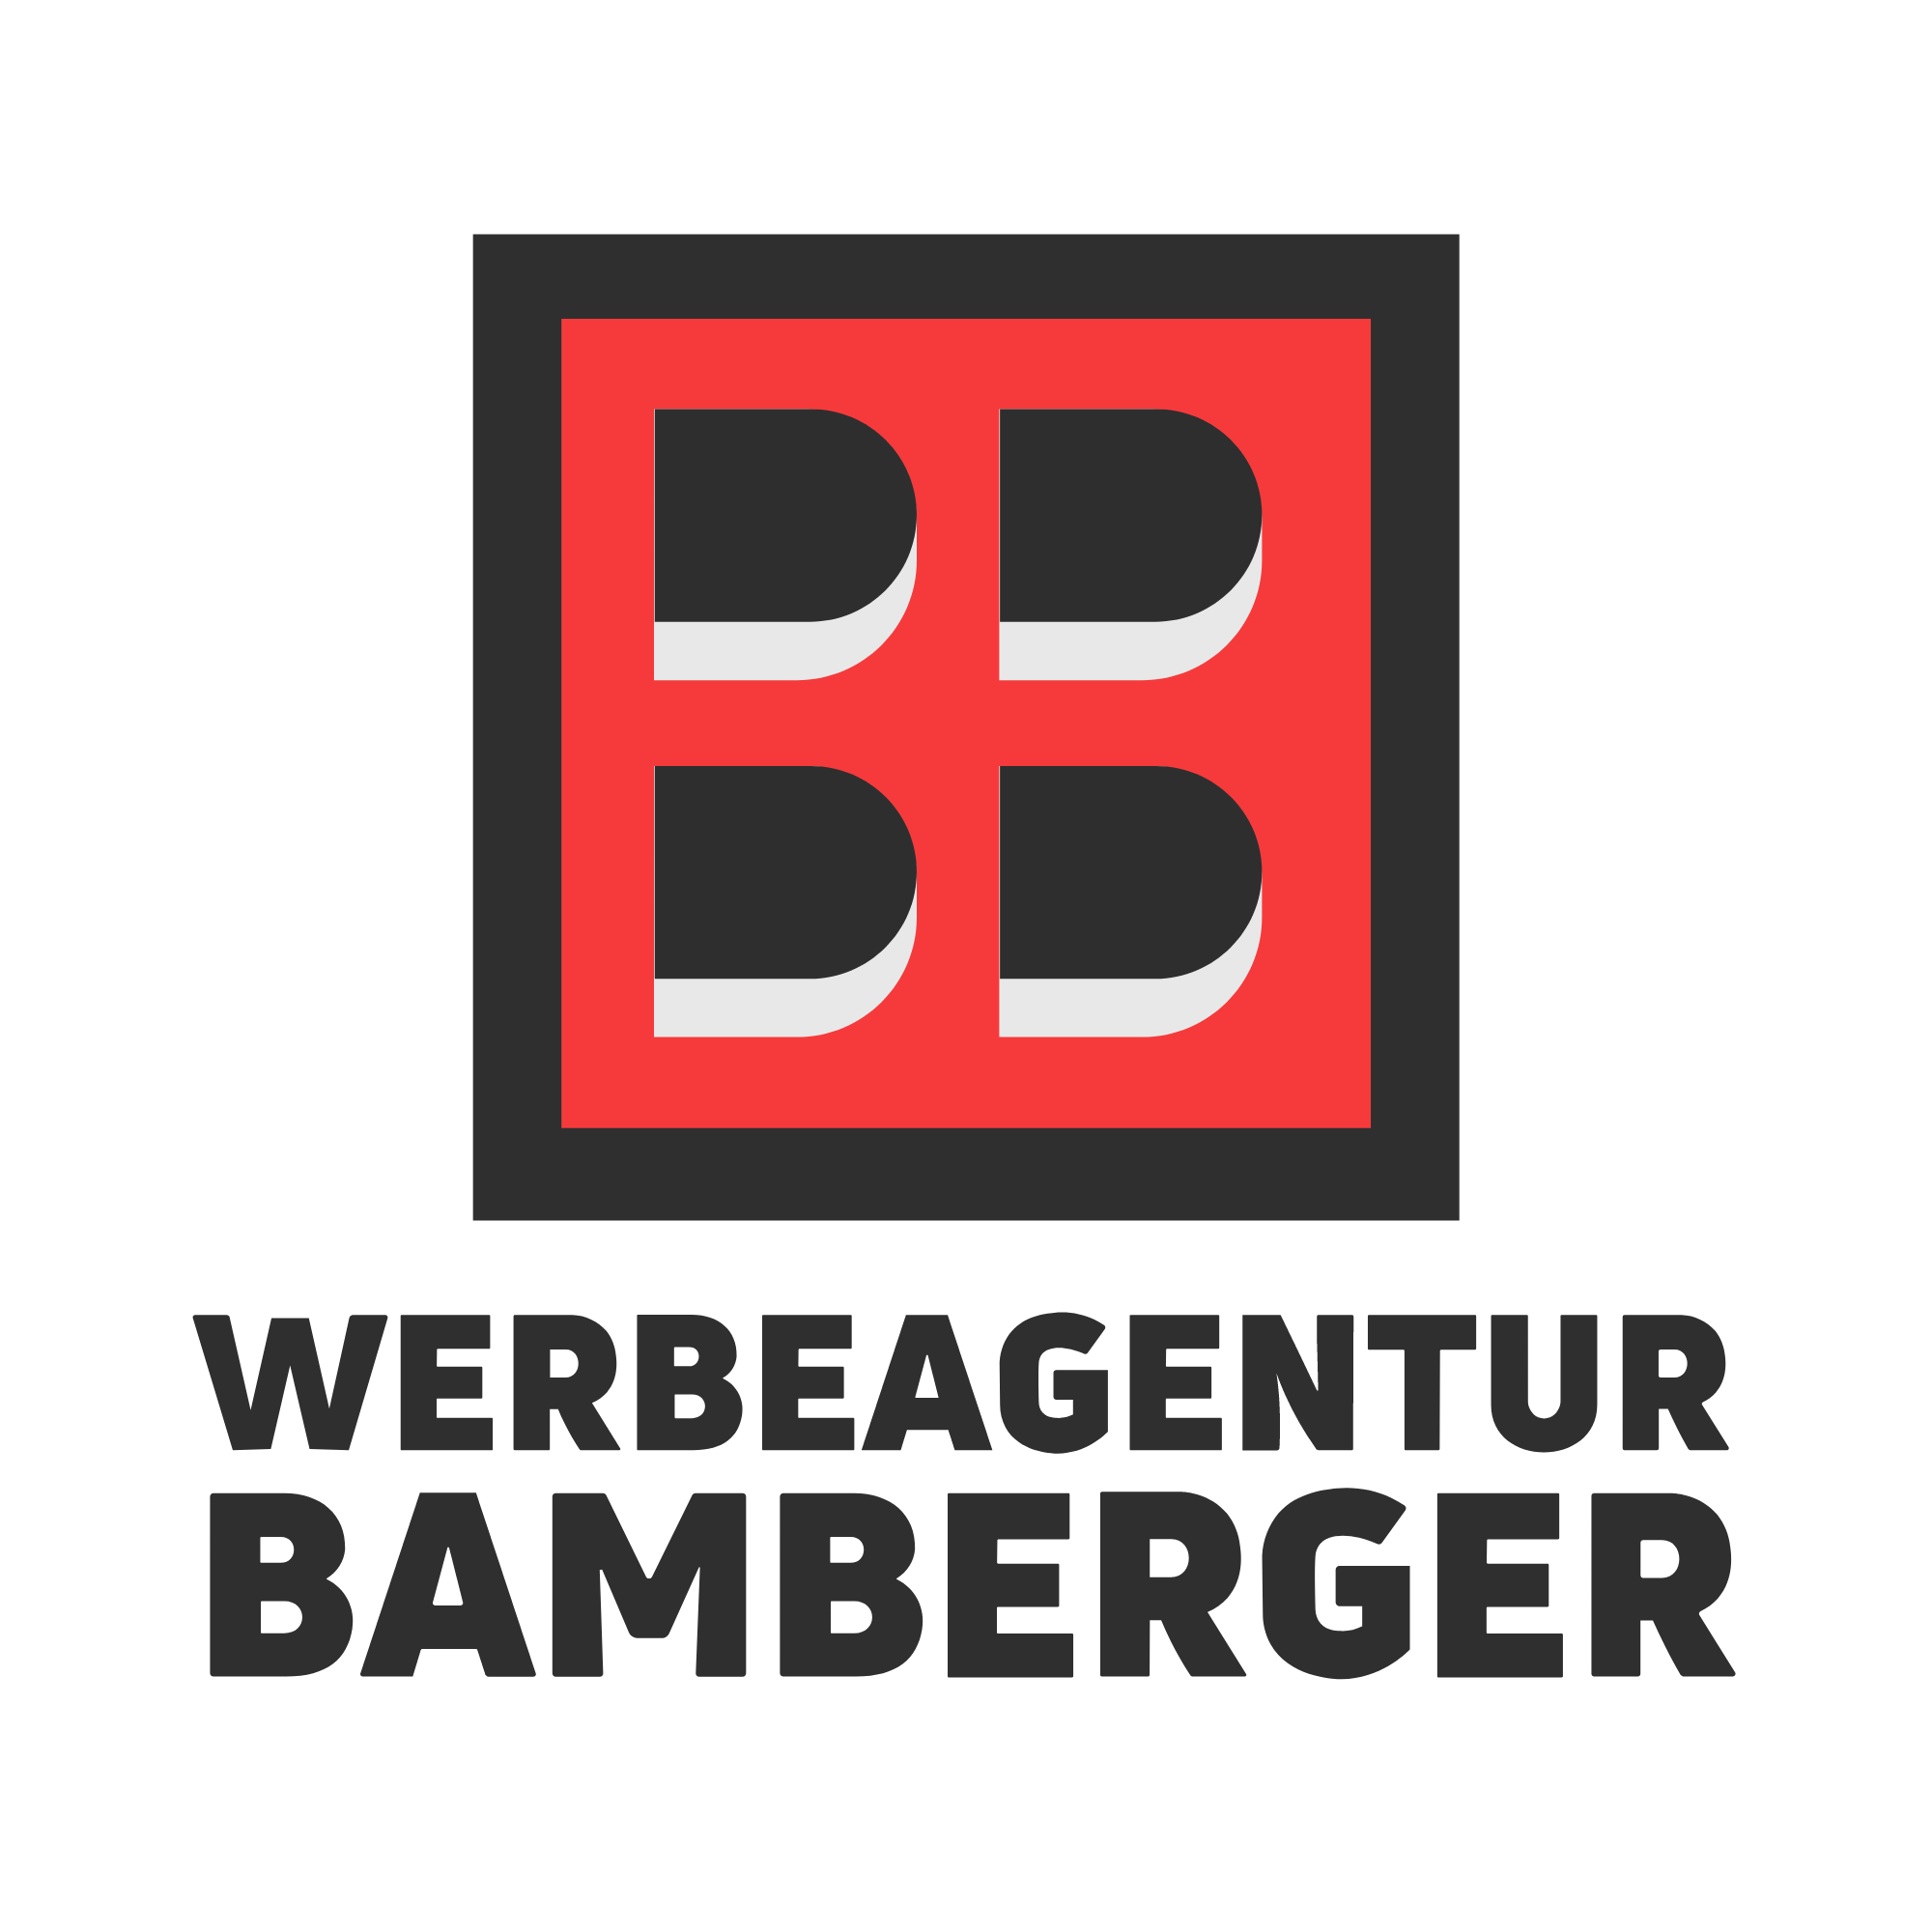 Werbeagentur Bamberger in Nürnberg - Logo